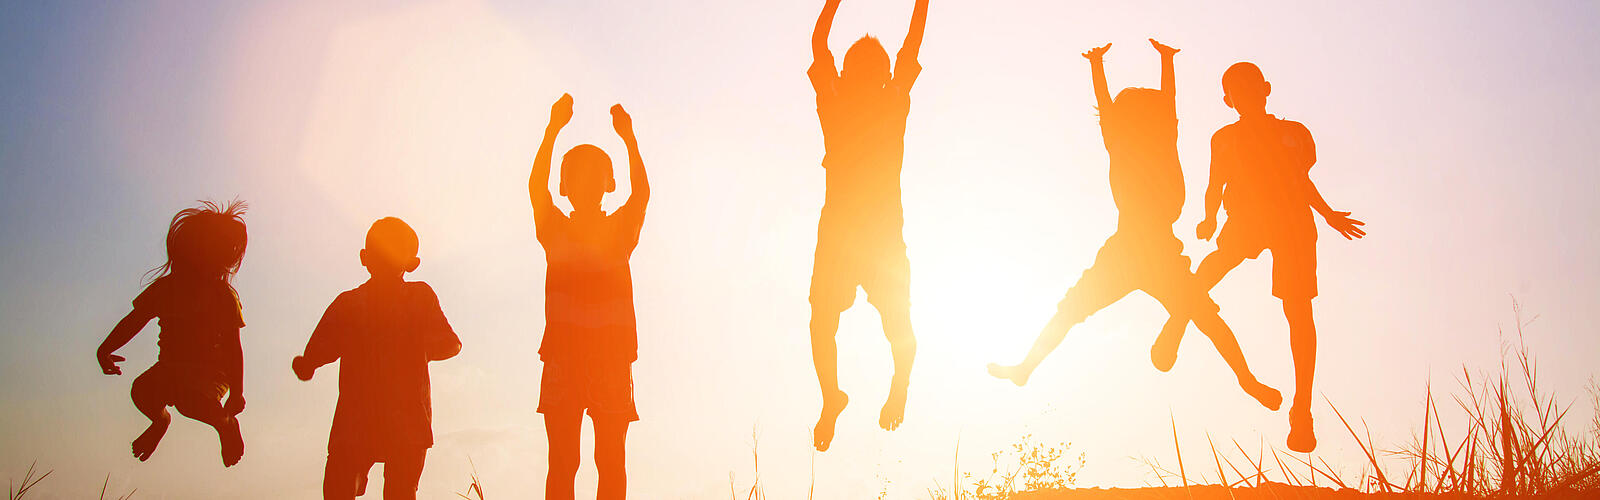 Silhouetten von sechs Kindern in Sommerkleidung, die in die Luft springen